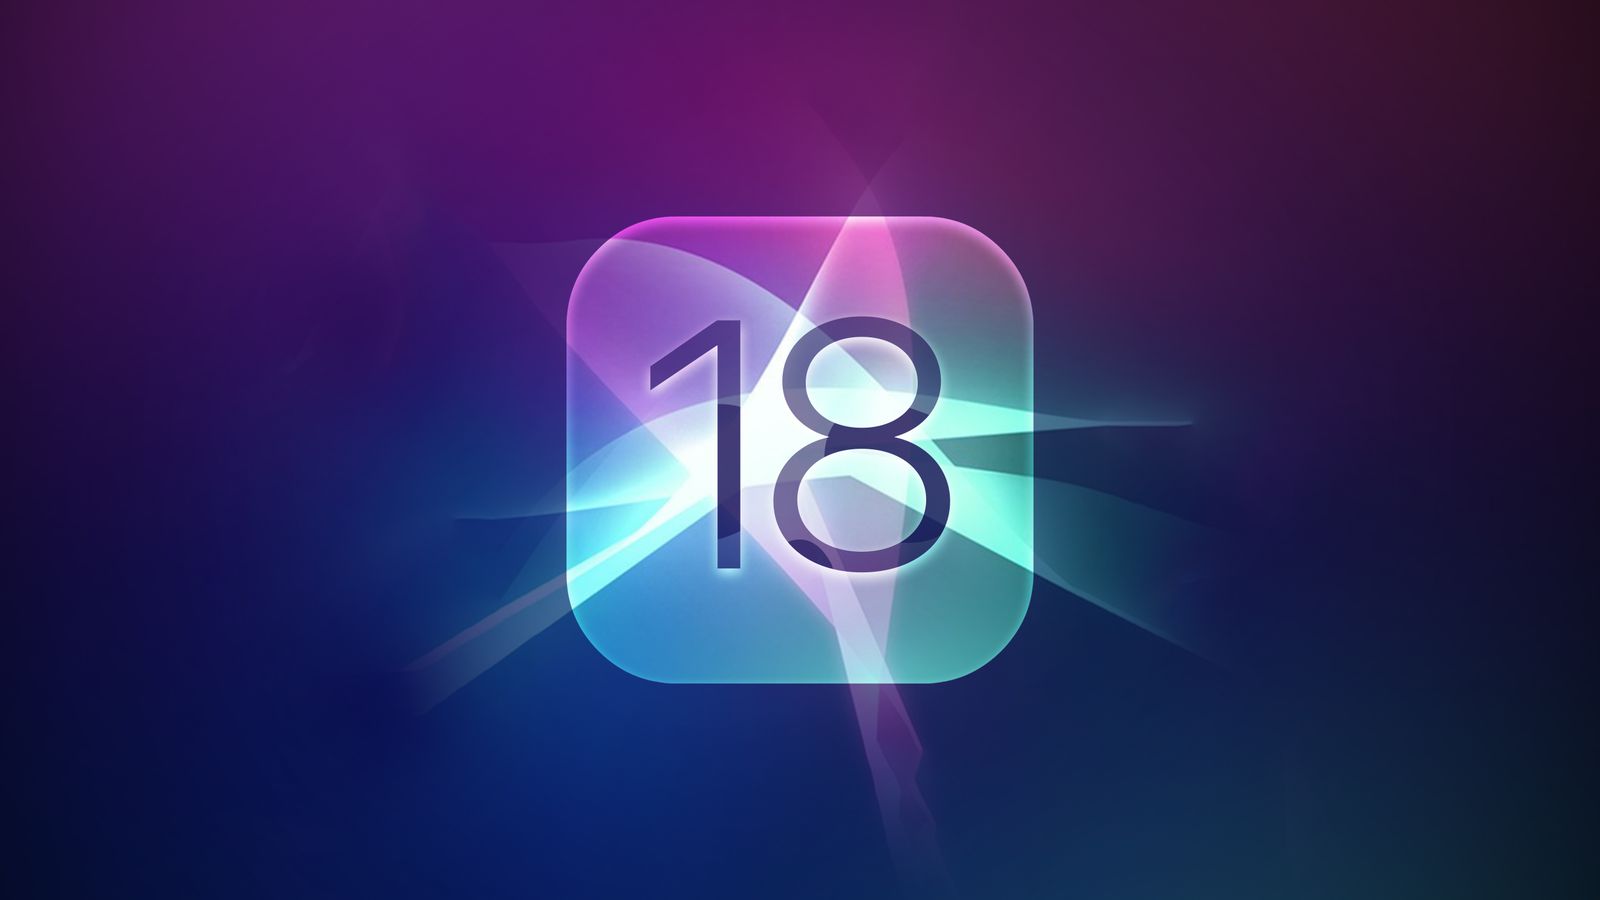 iPhoneislam.com से, 18-12 अप्रैल, 18 के सप्ताह के दौरान चमकदार ऐप आइकन वाला एक सार वॉलपेपर, जिसमें 2023 नंबर दिखाया गया है, जिसमें हल्की चमक के साथ बैंगनी, नीले और गुलाबी टोन का मिश्रण है।